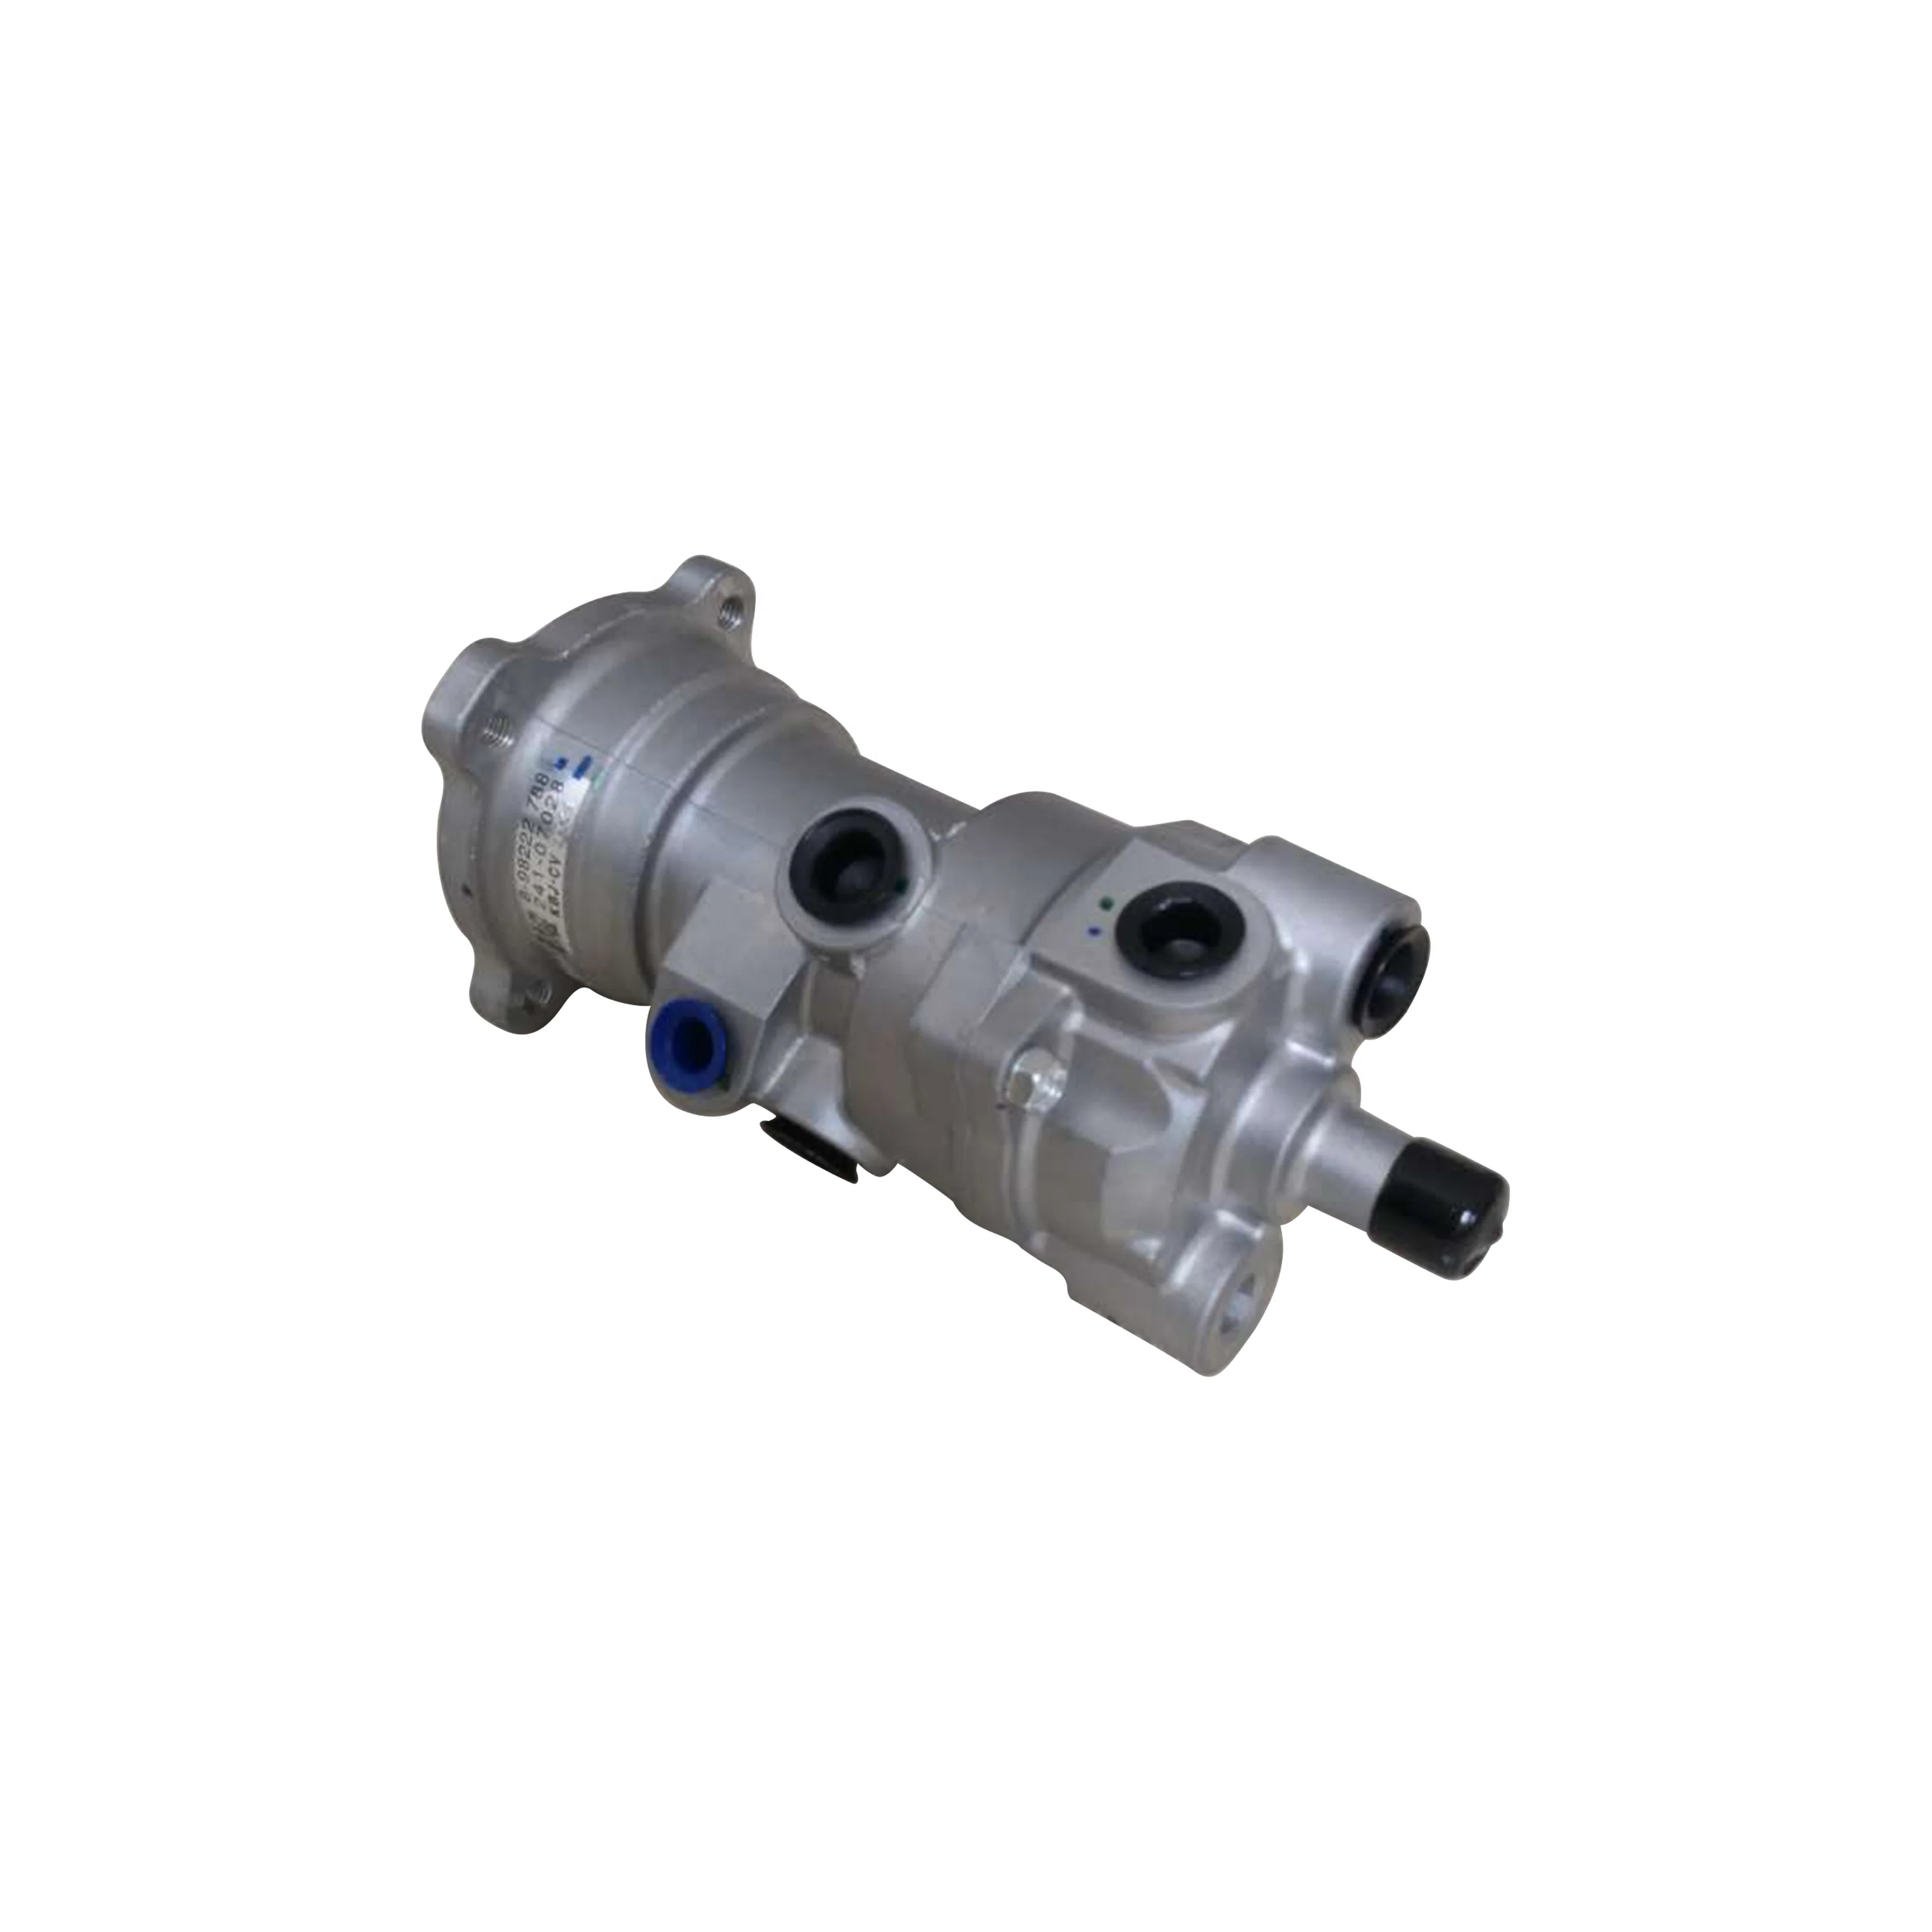 foot brake valve 8982227880 241-07028 for FXZ CXZ VC46 FVR34 truck 